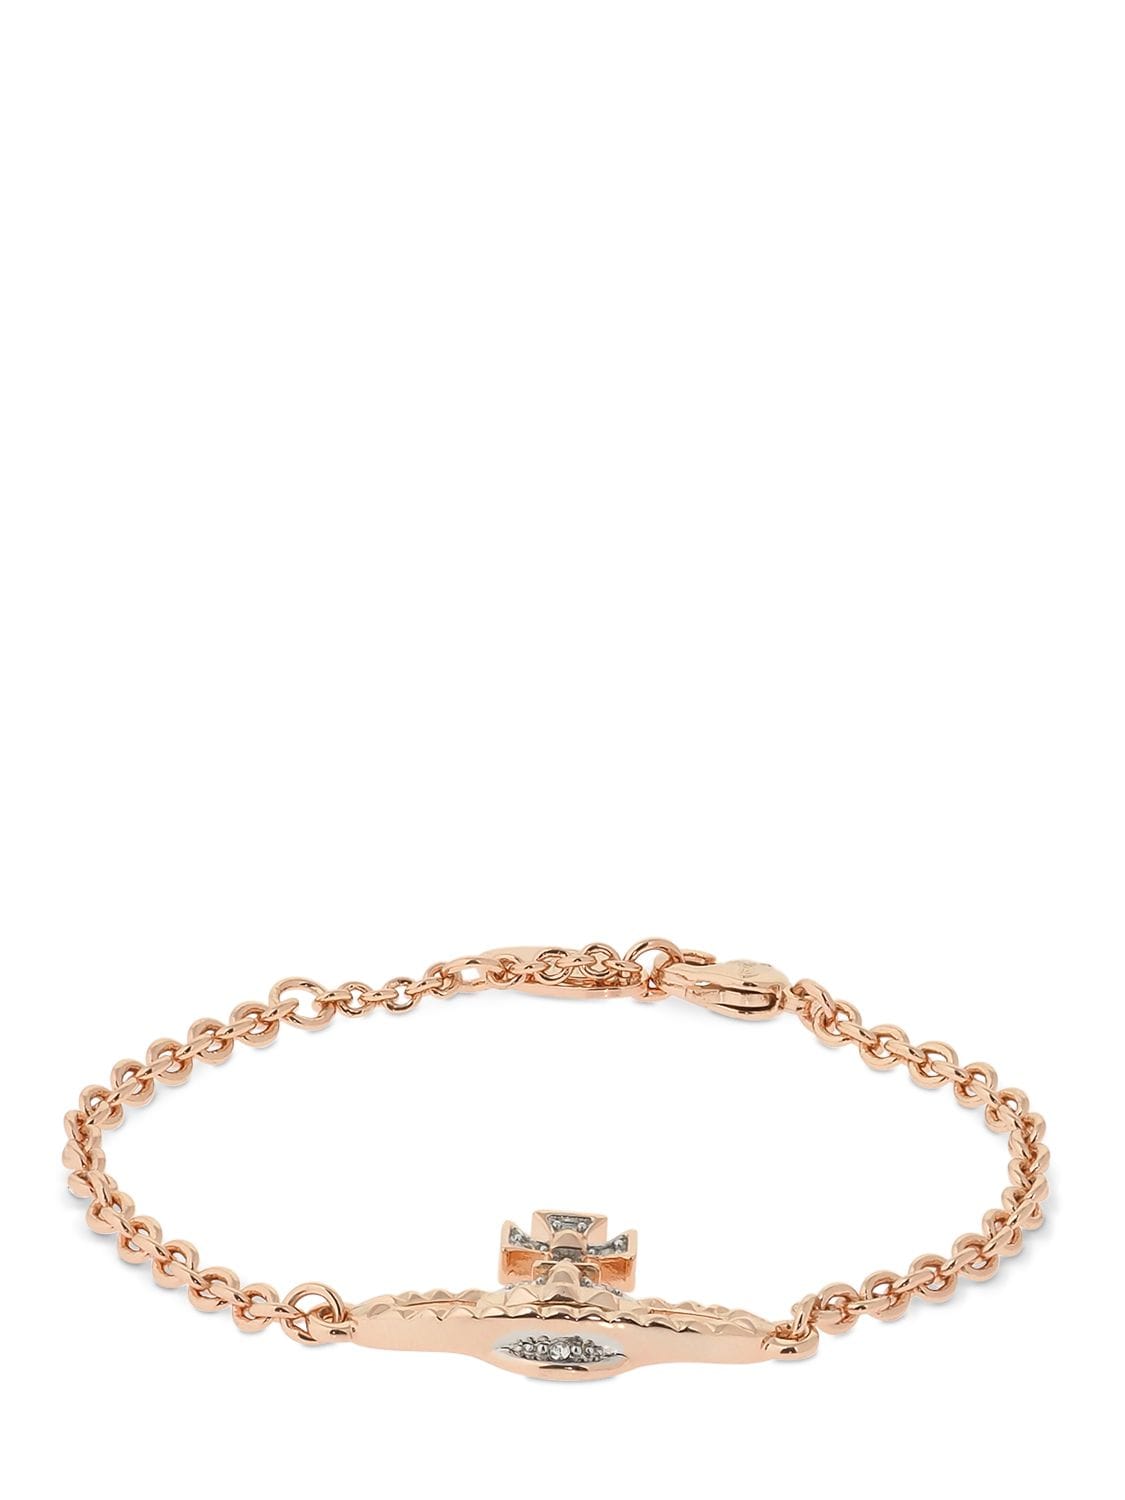 Vivienne Westwood Mayfair Orbit Bracelet In Rose Gold